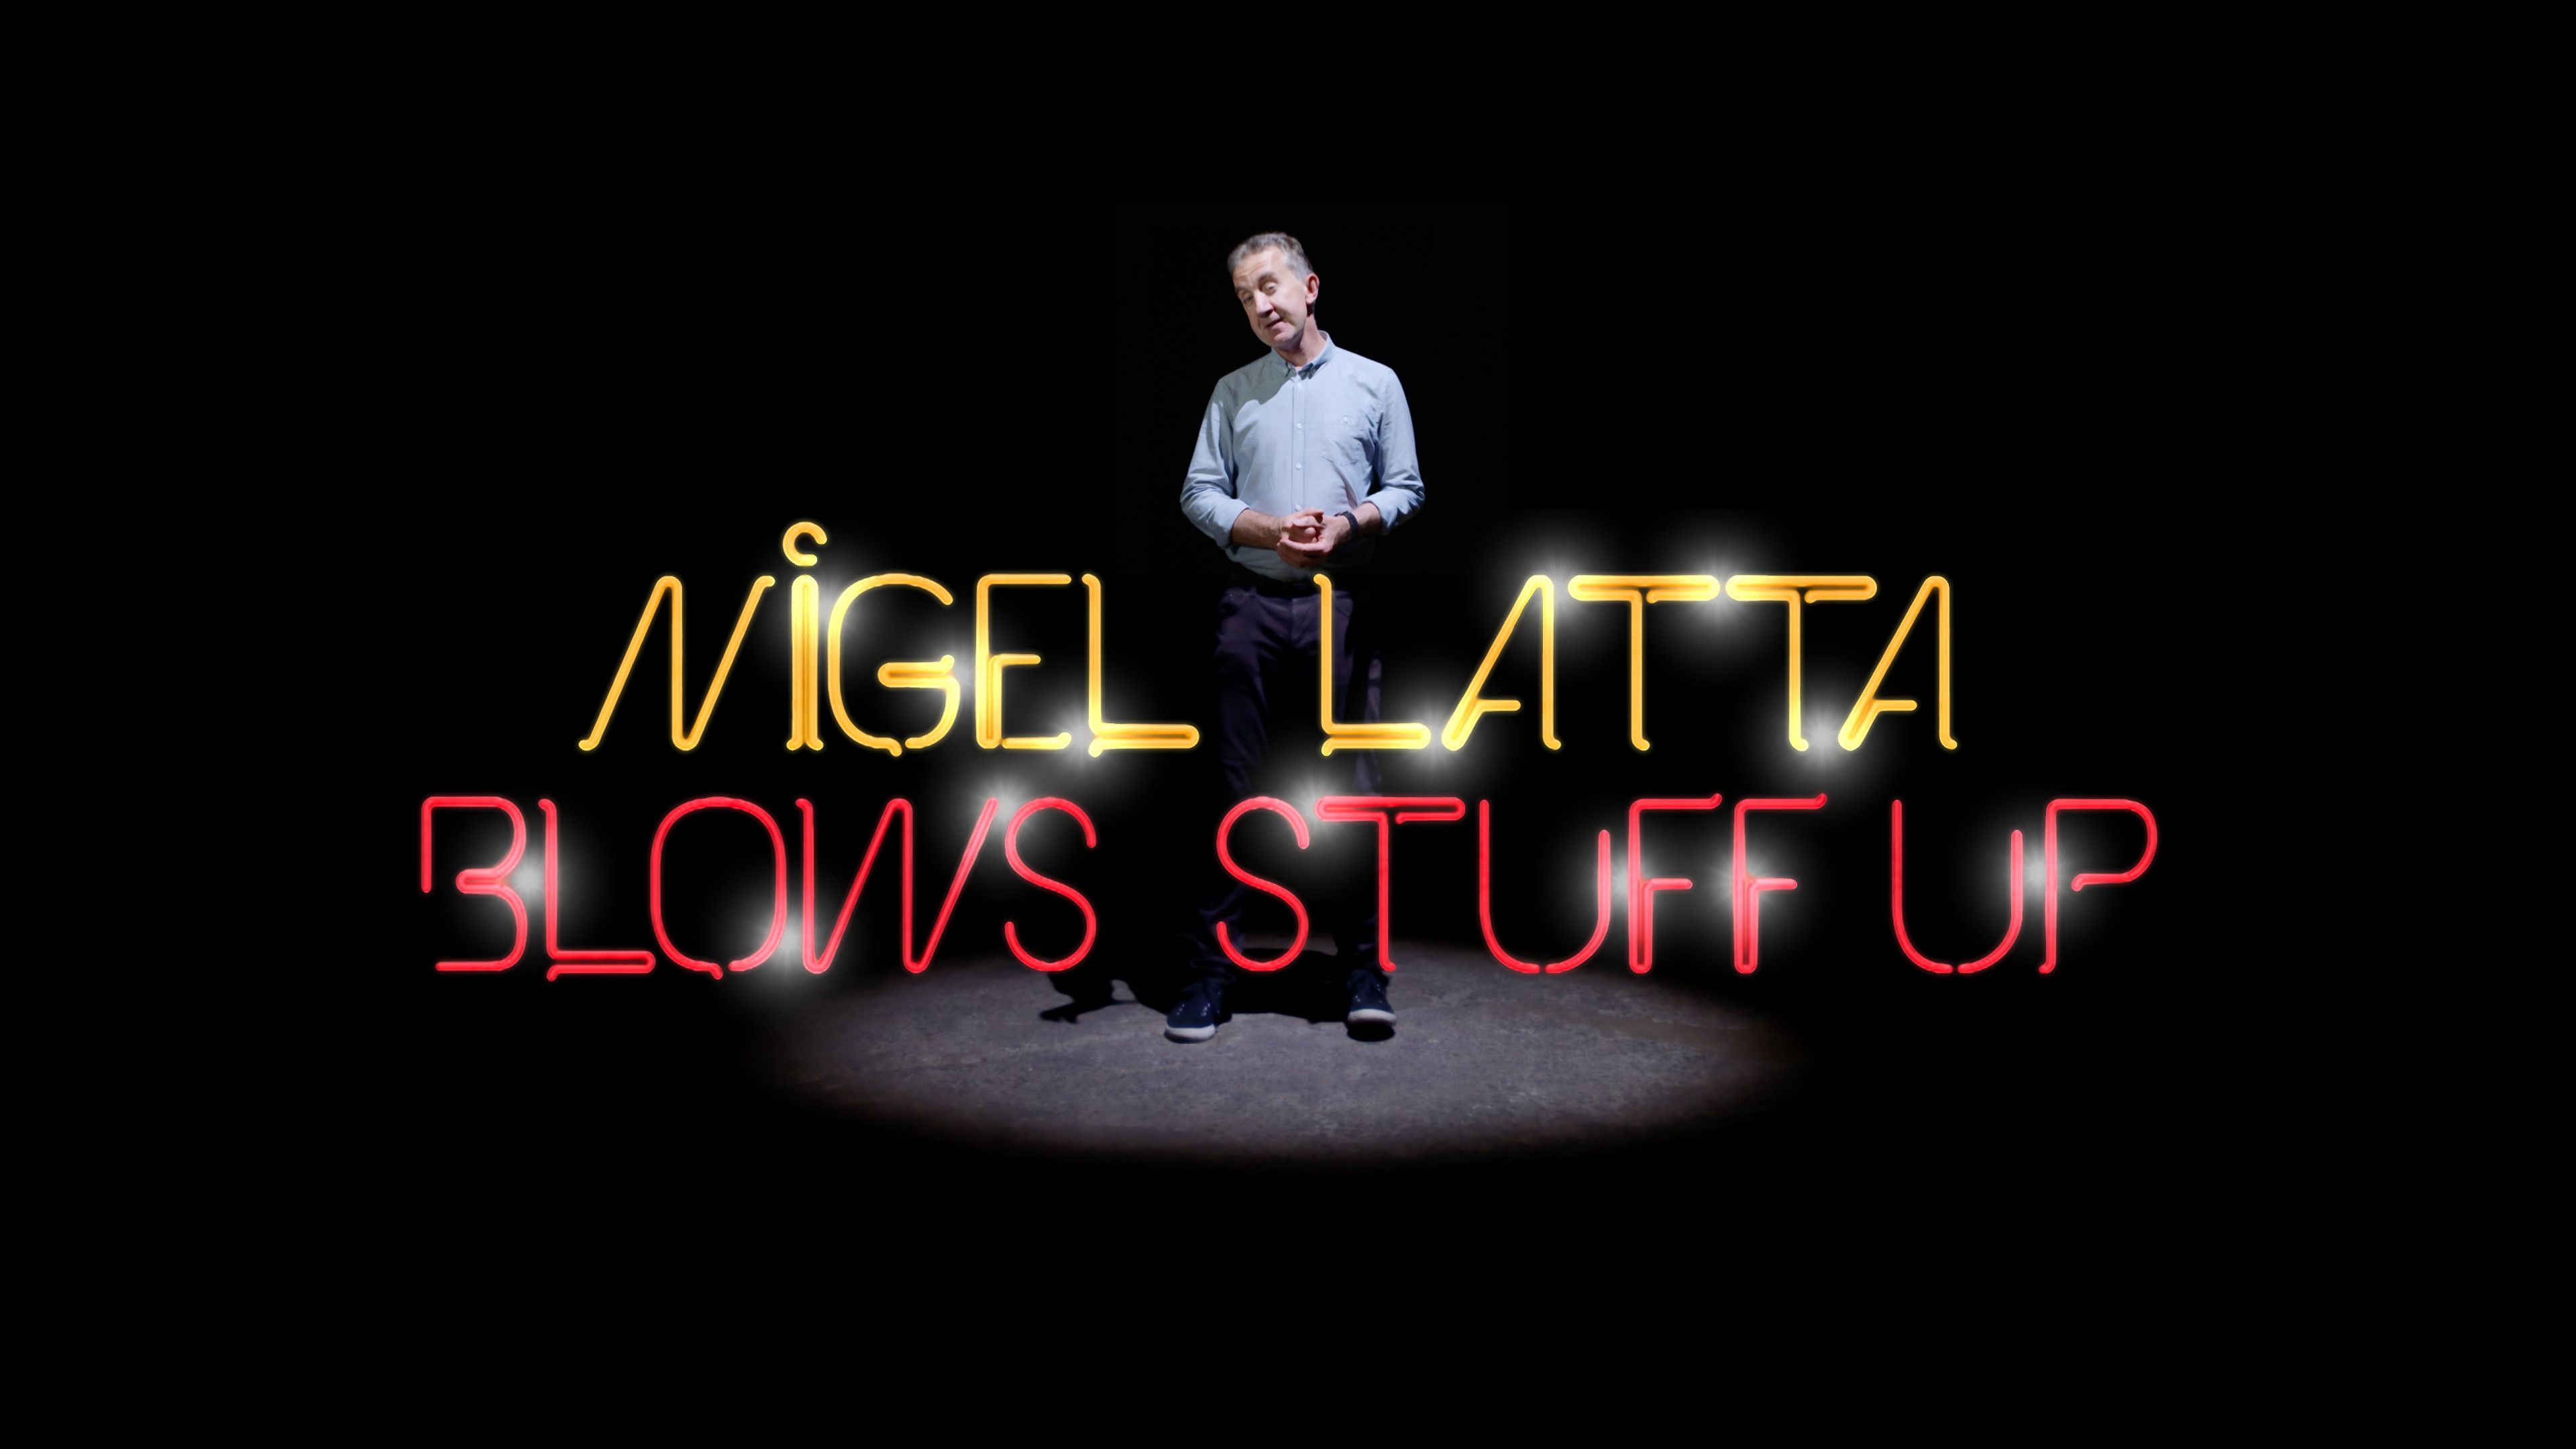 Nigel Latta Blows Stuff Up